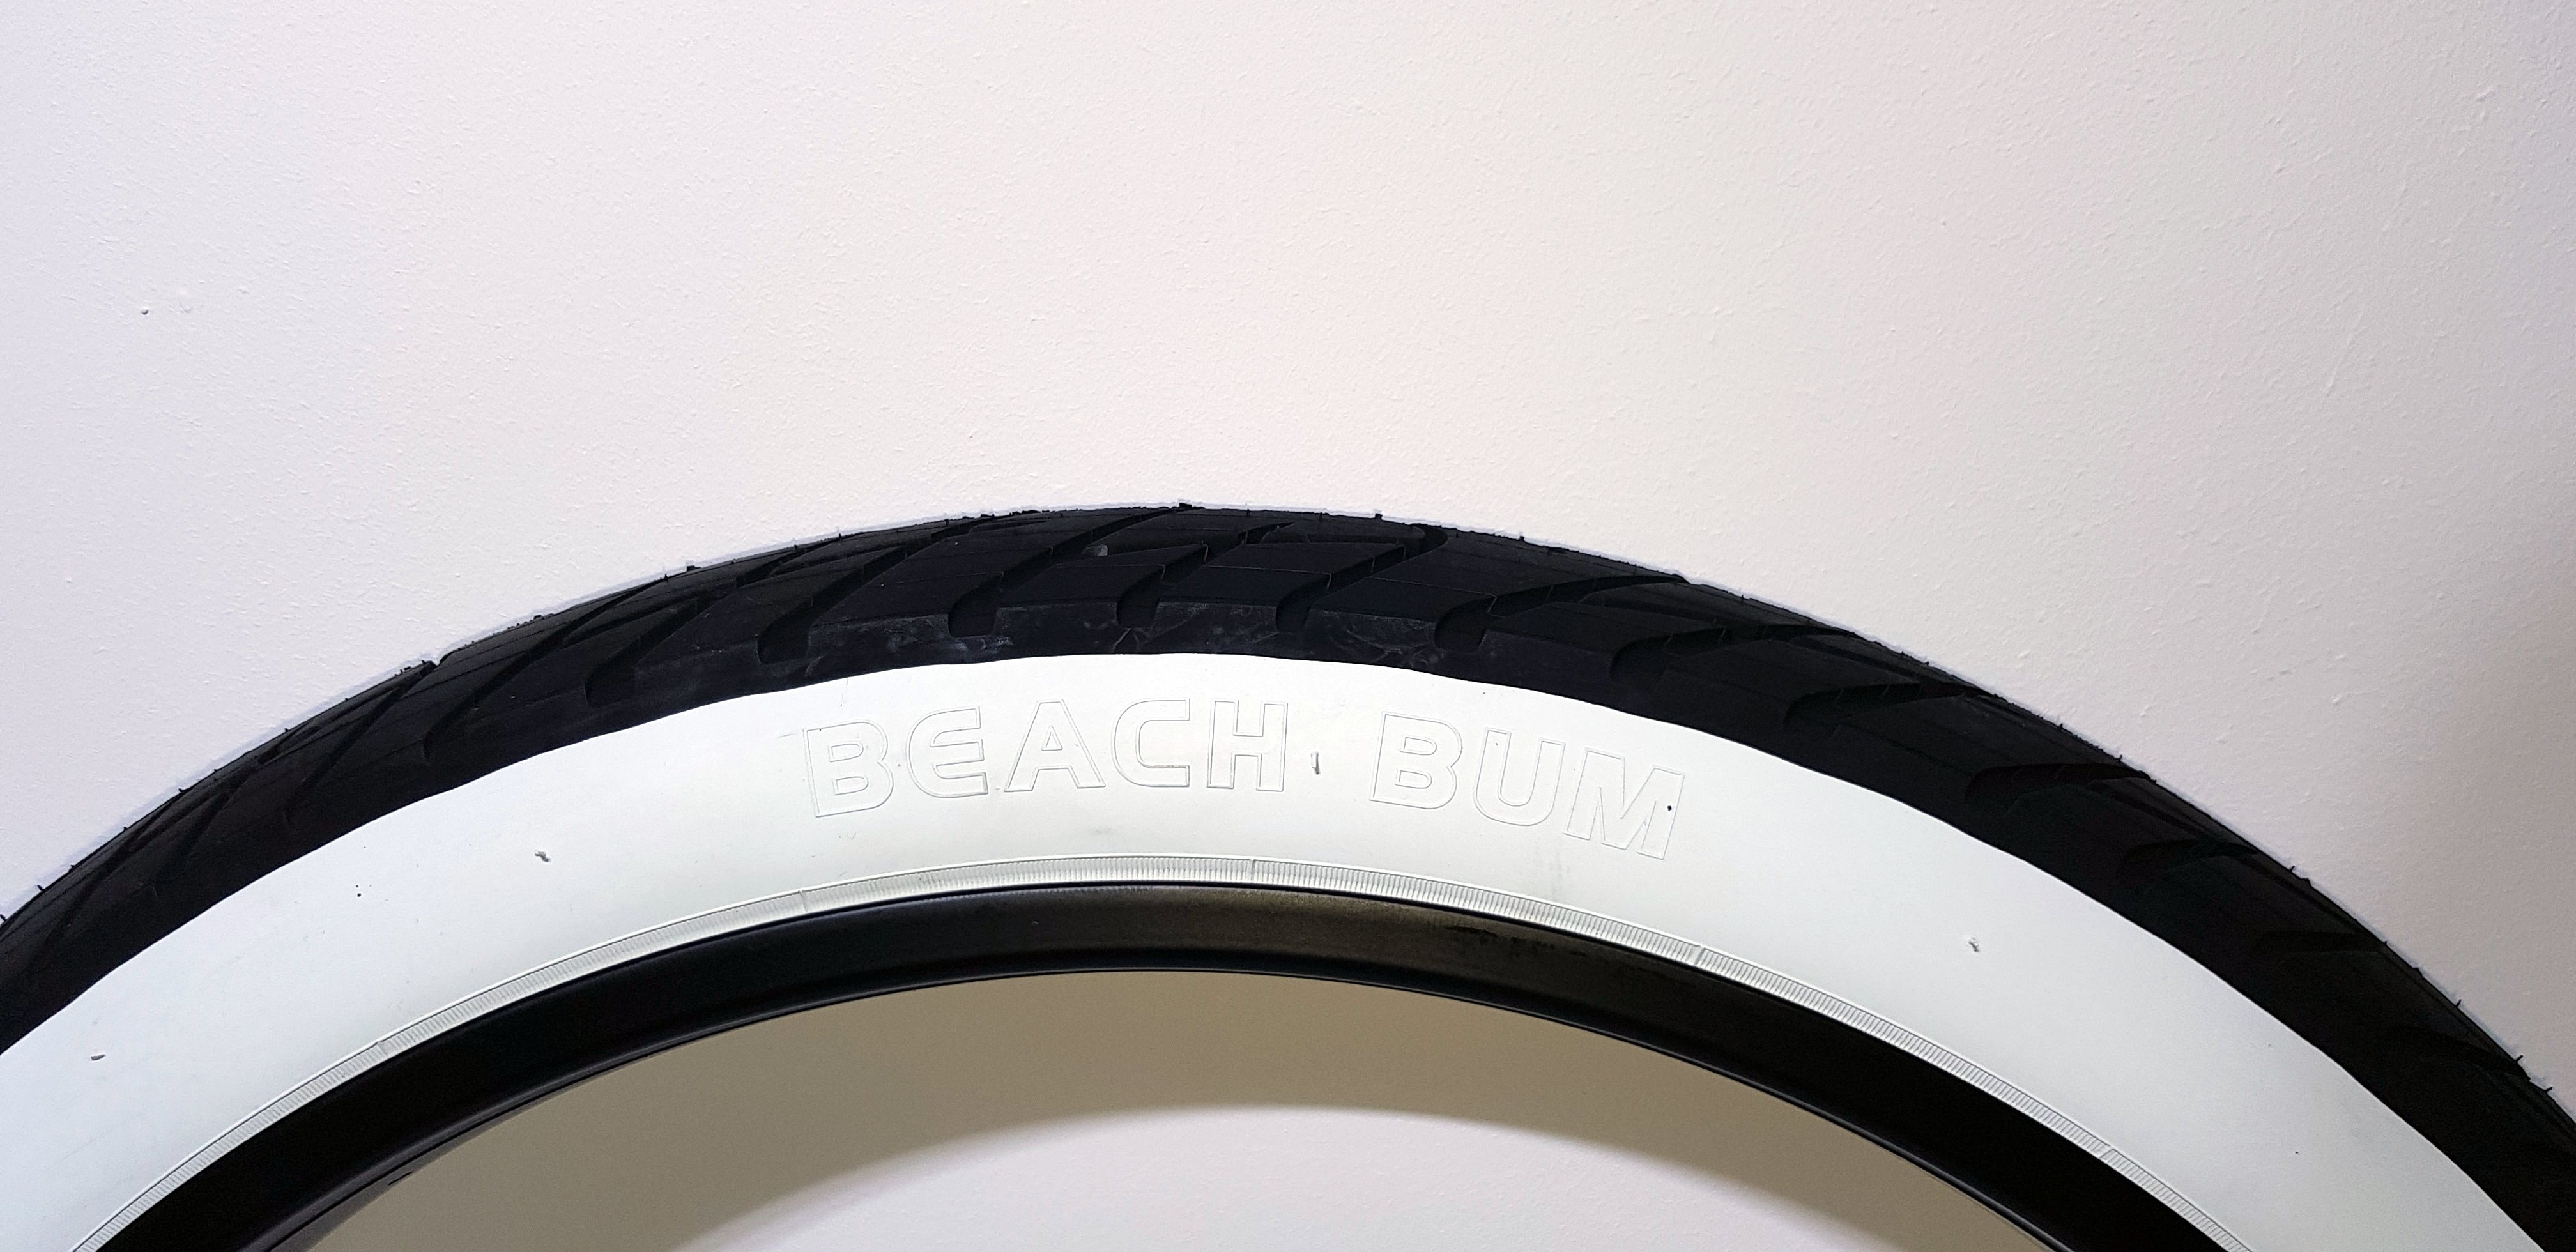 Neumático Beach Bum 26 x 3.0 negro blanco